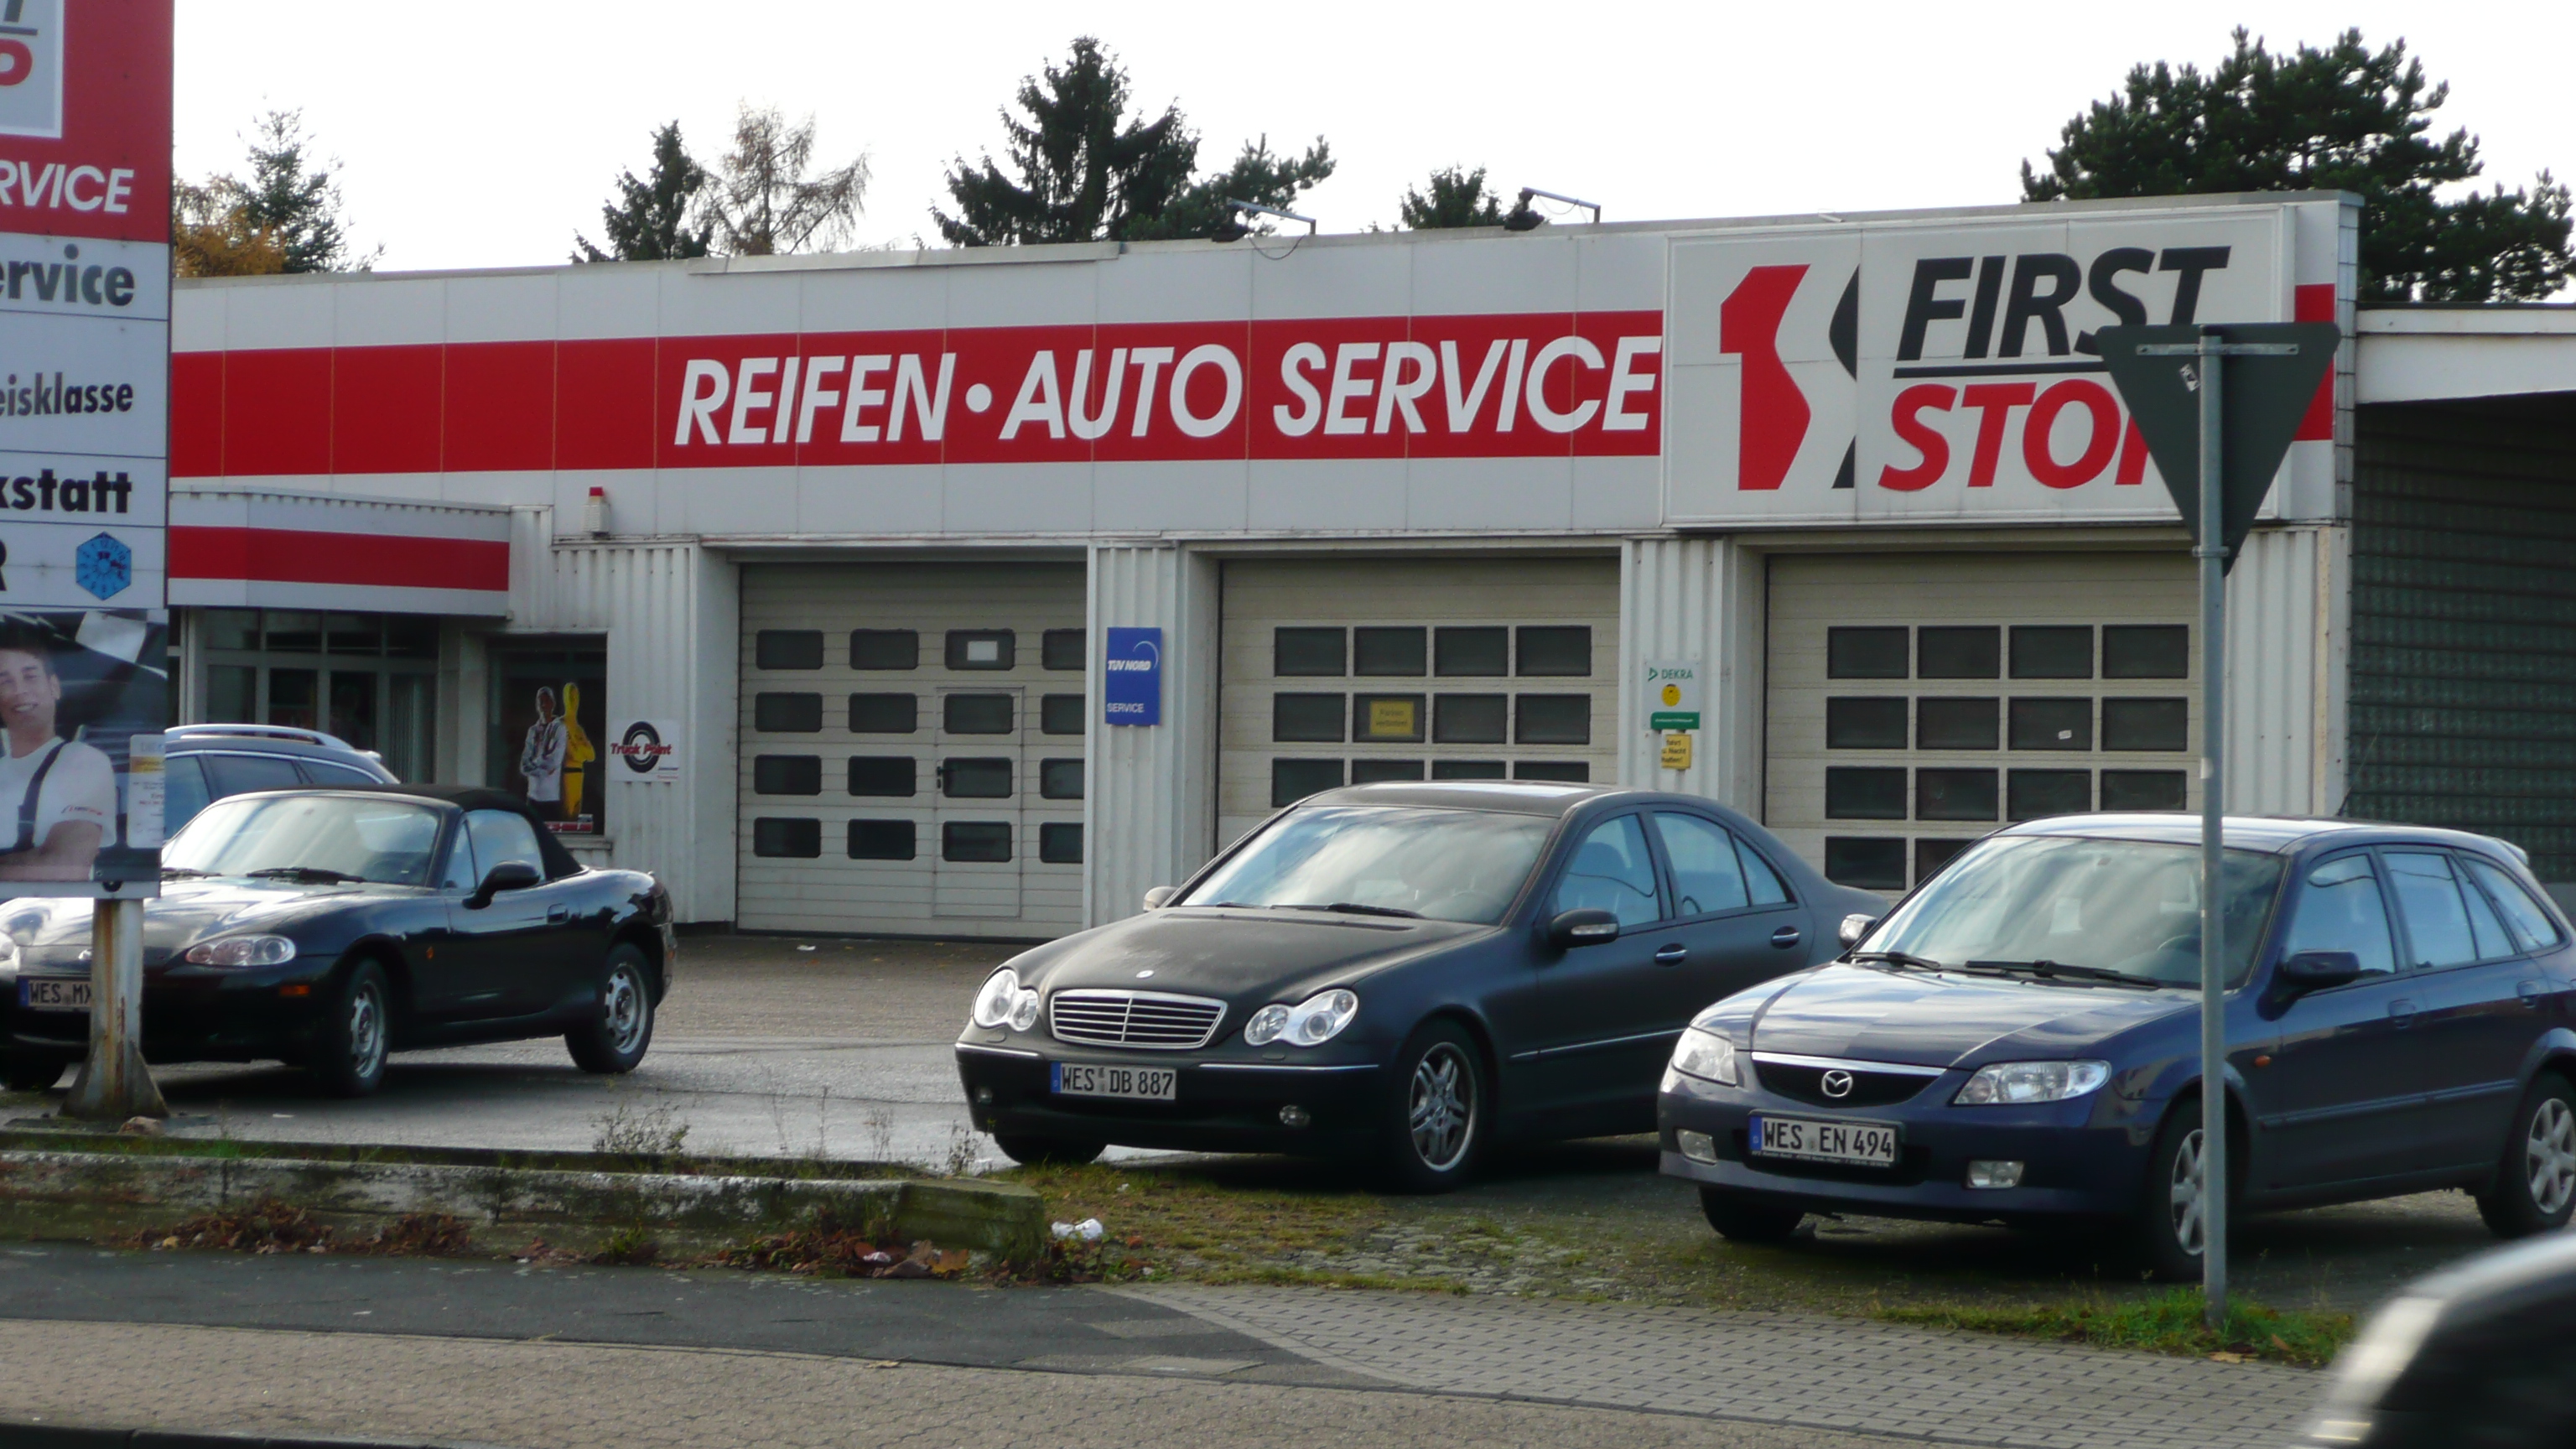 Bild 2 First Stop Reifen Auto Service GmbH in Moers